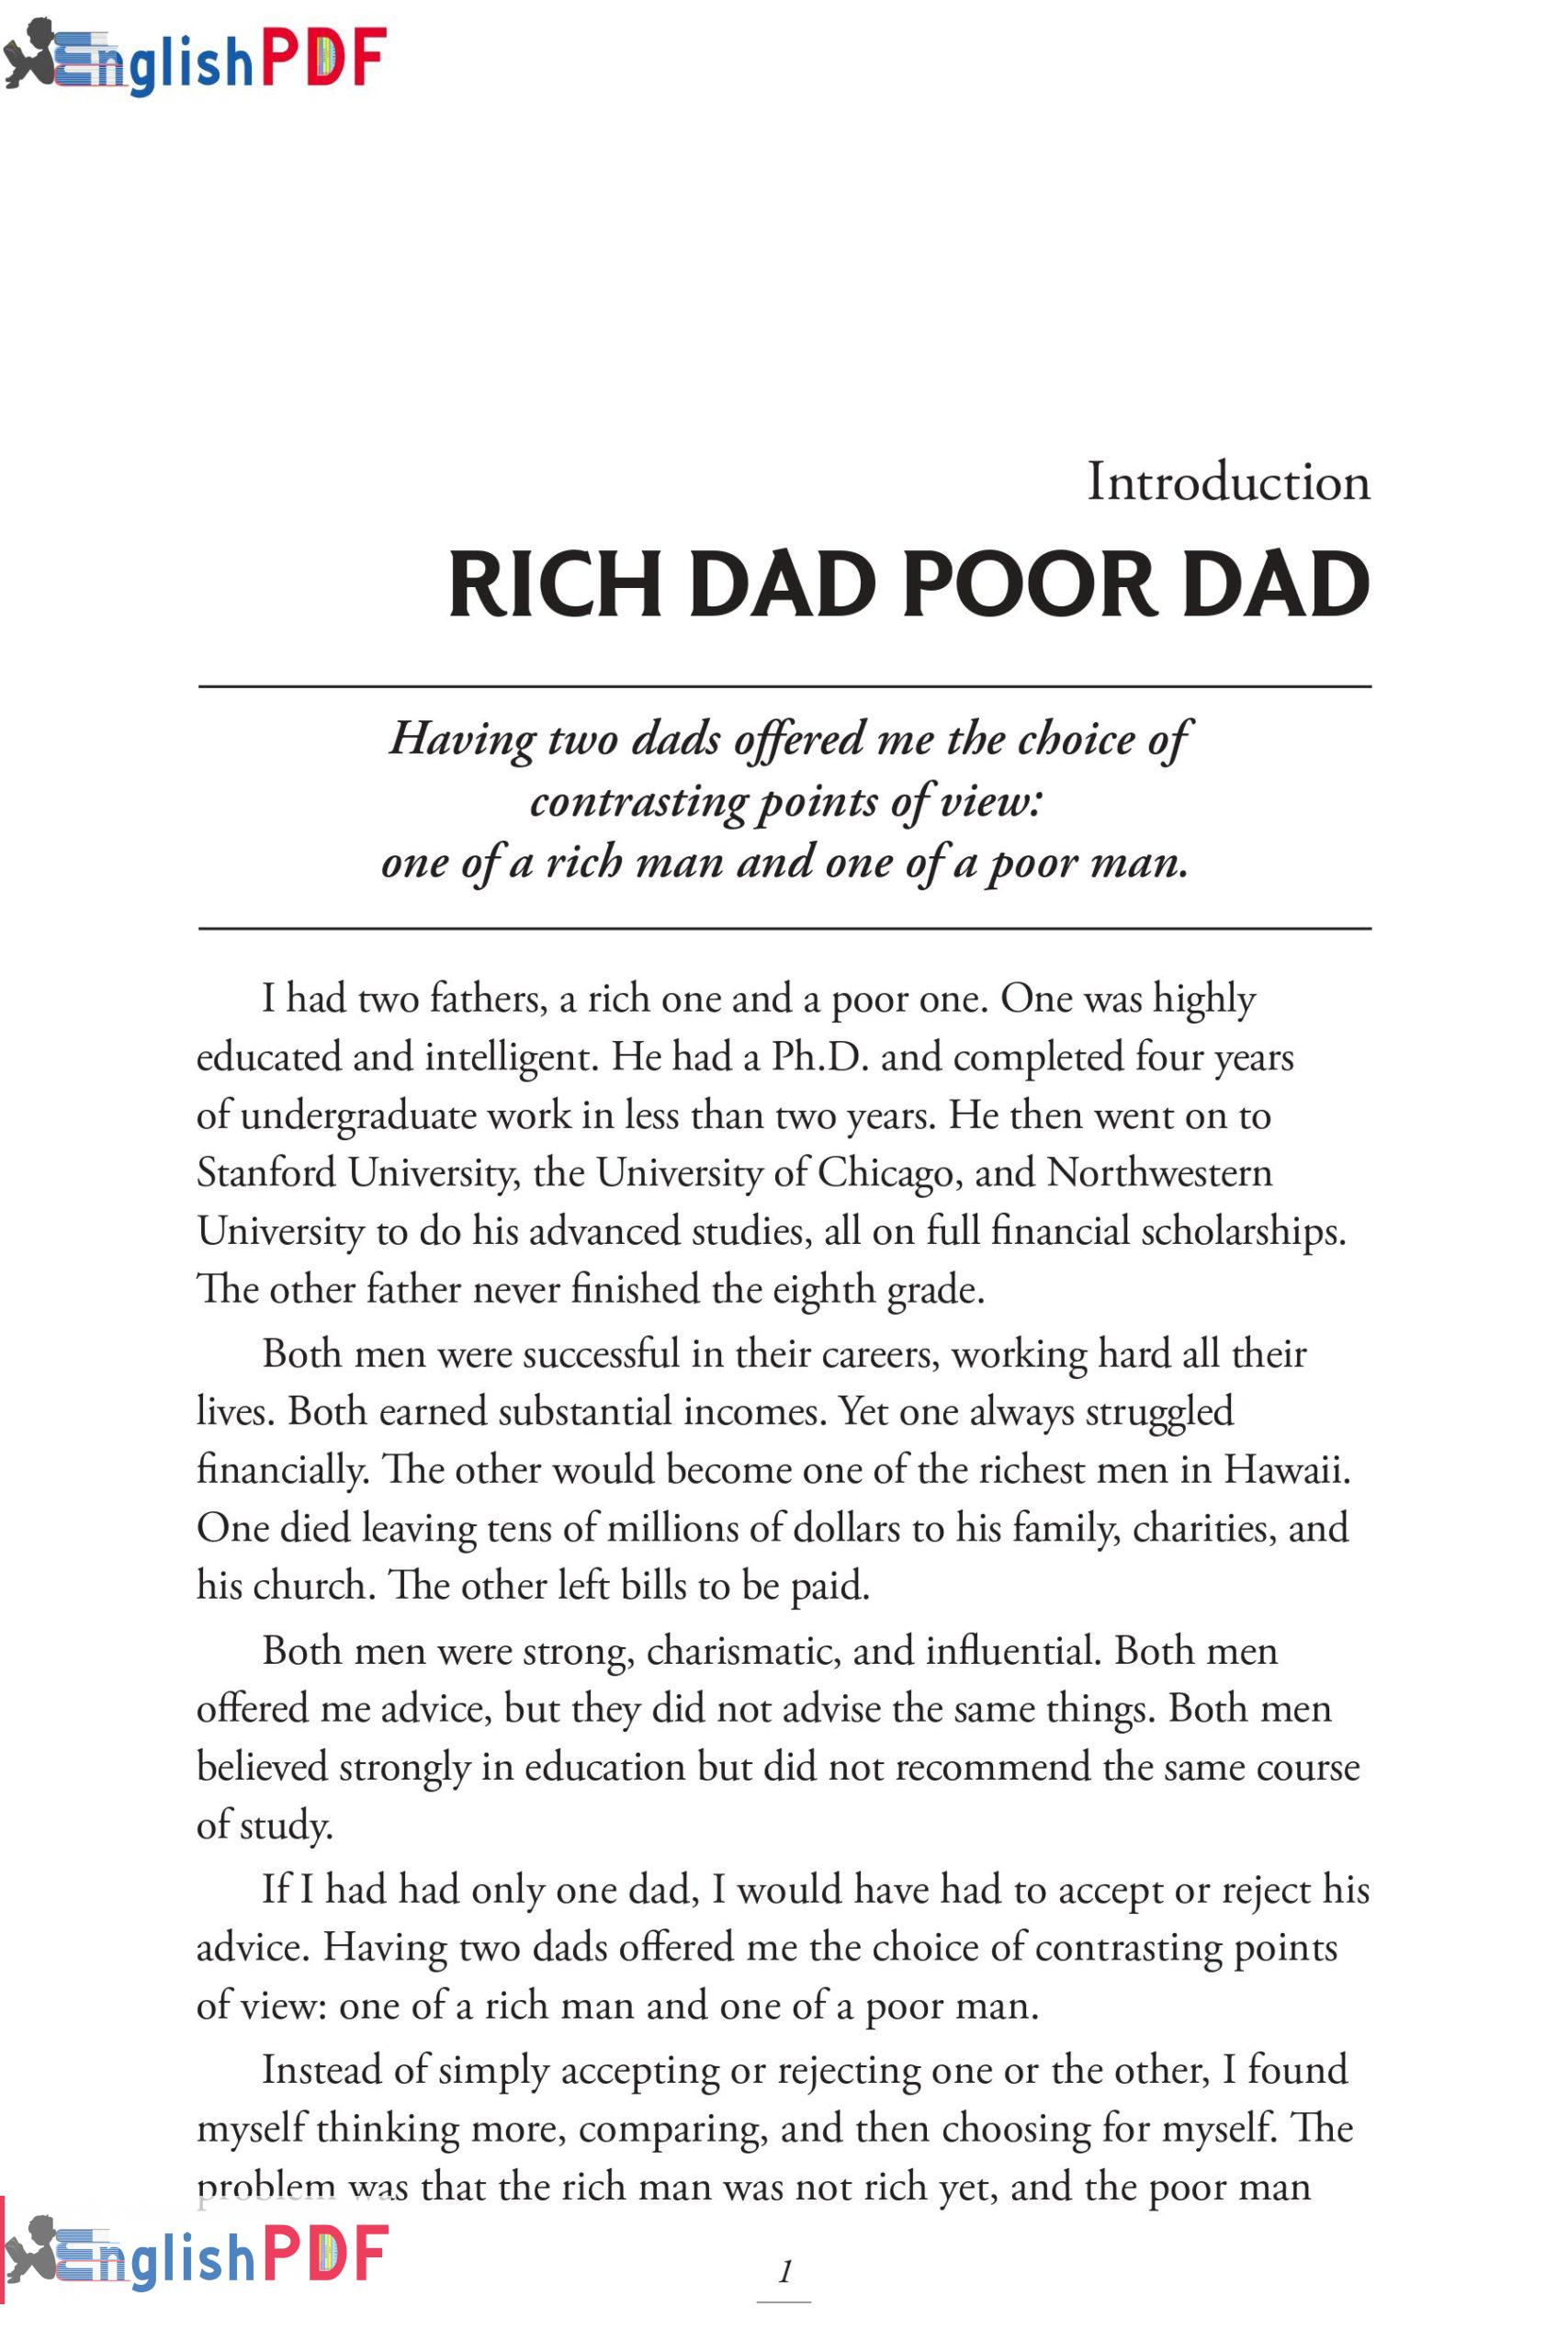 Rich Dad Poor Dad PDF EnglishPDF 0003 1